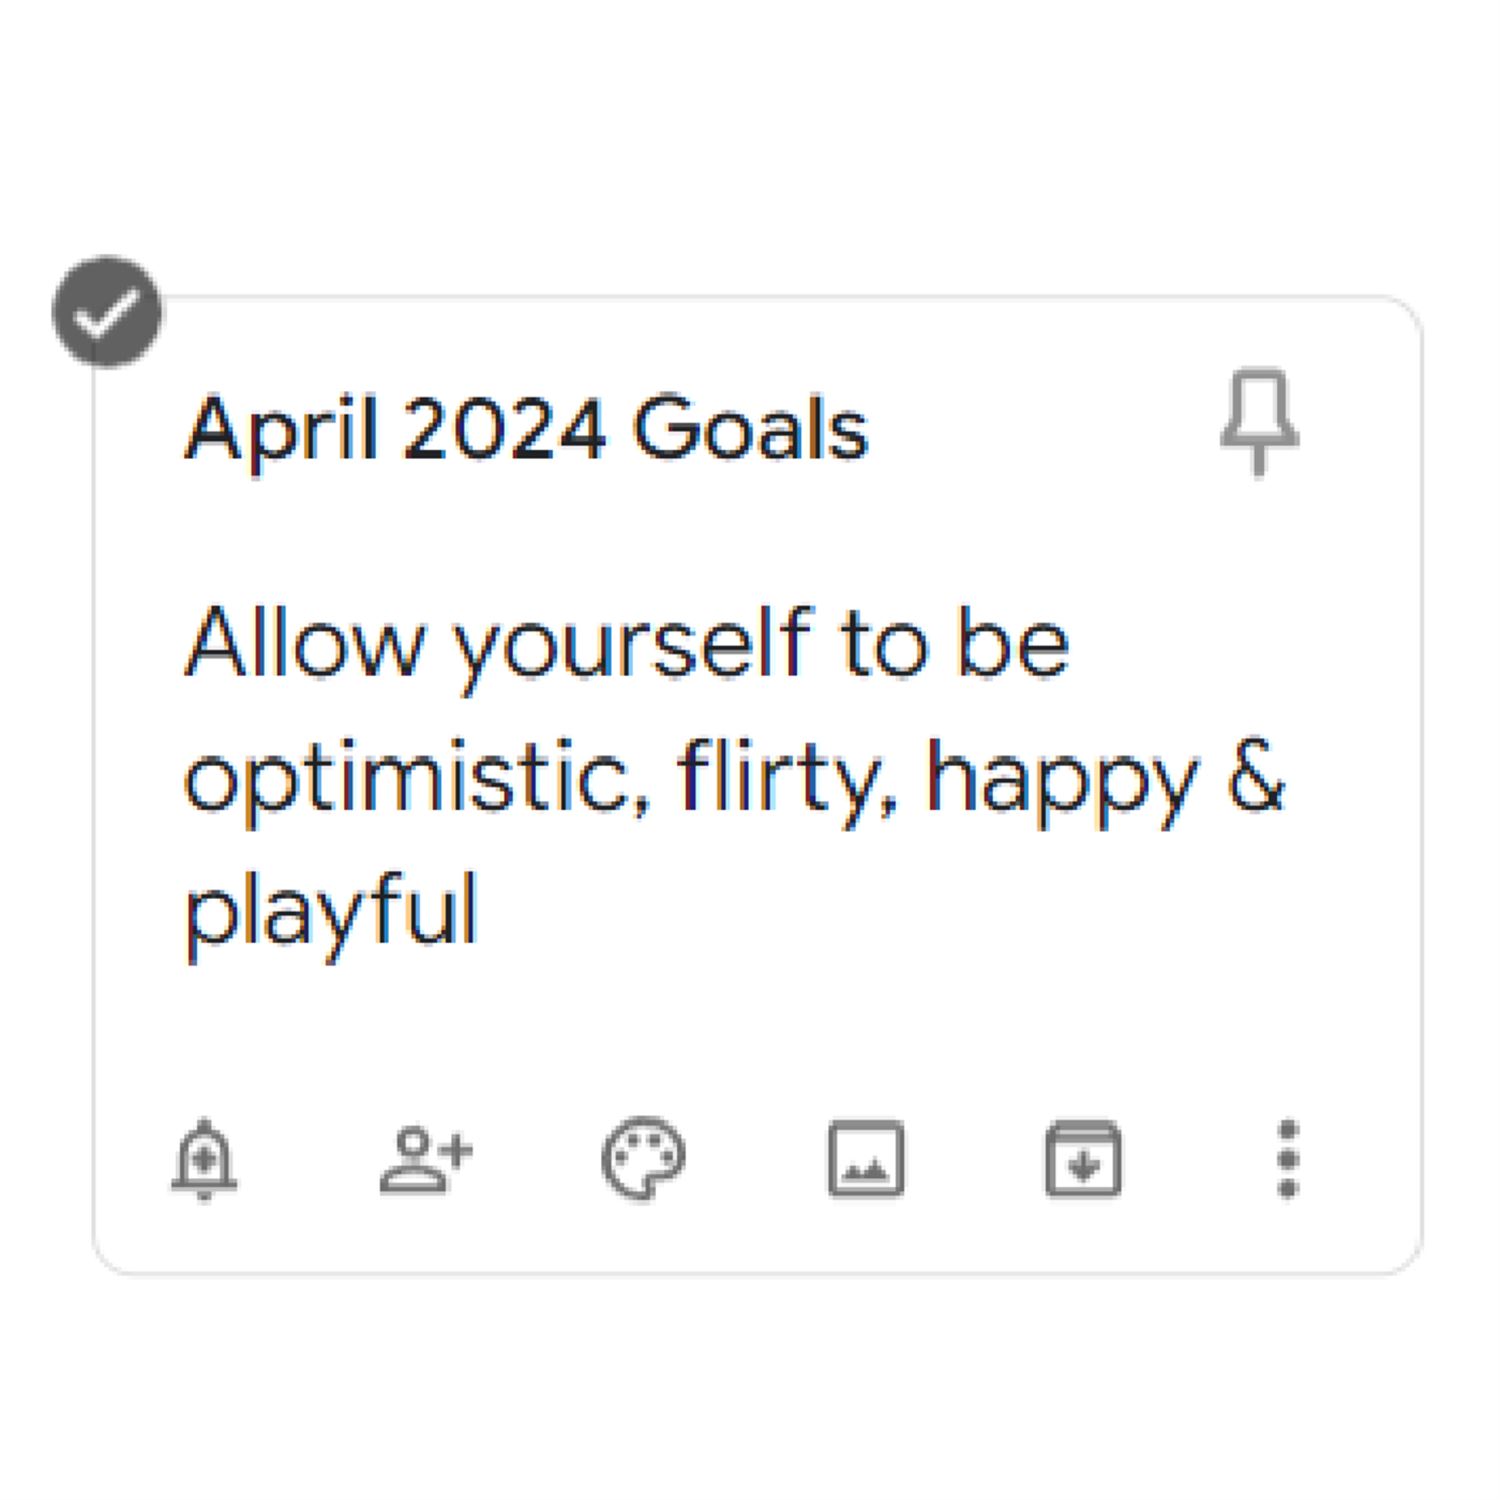 Kyrin's April 2024 Goals